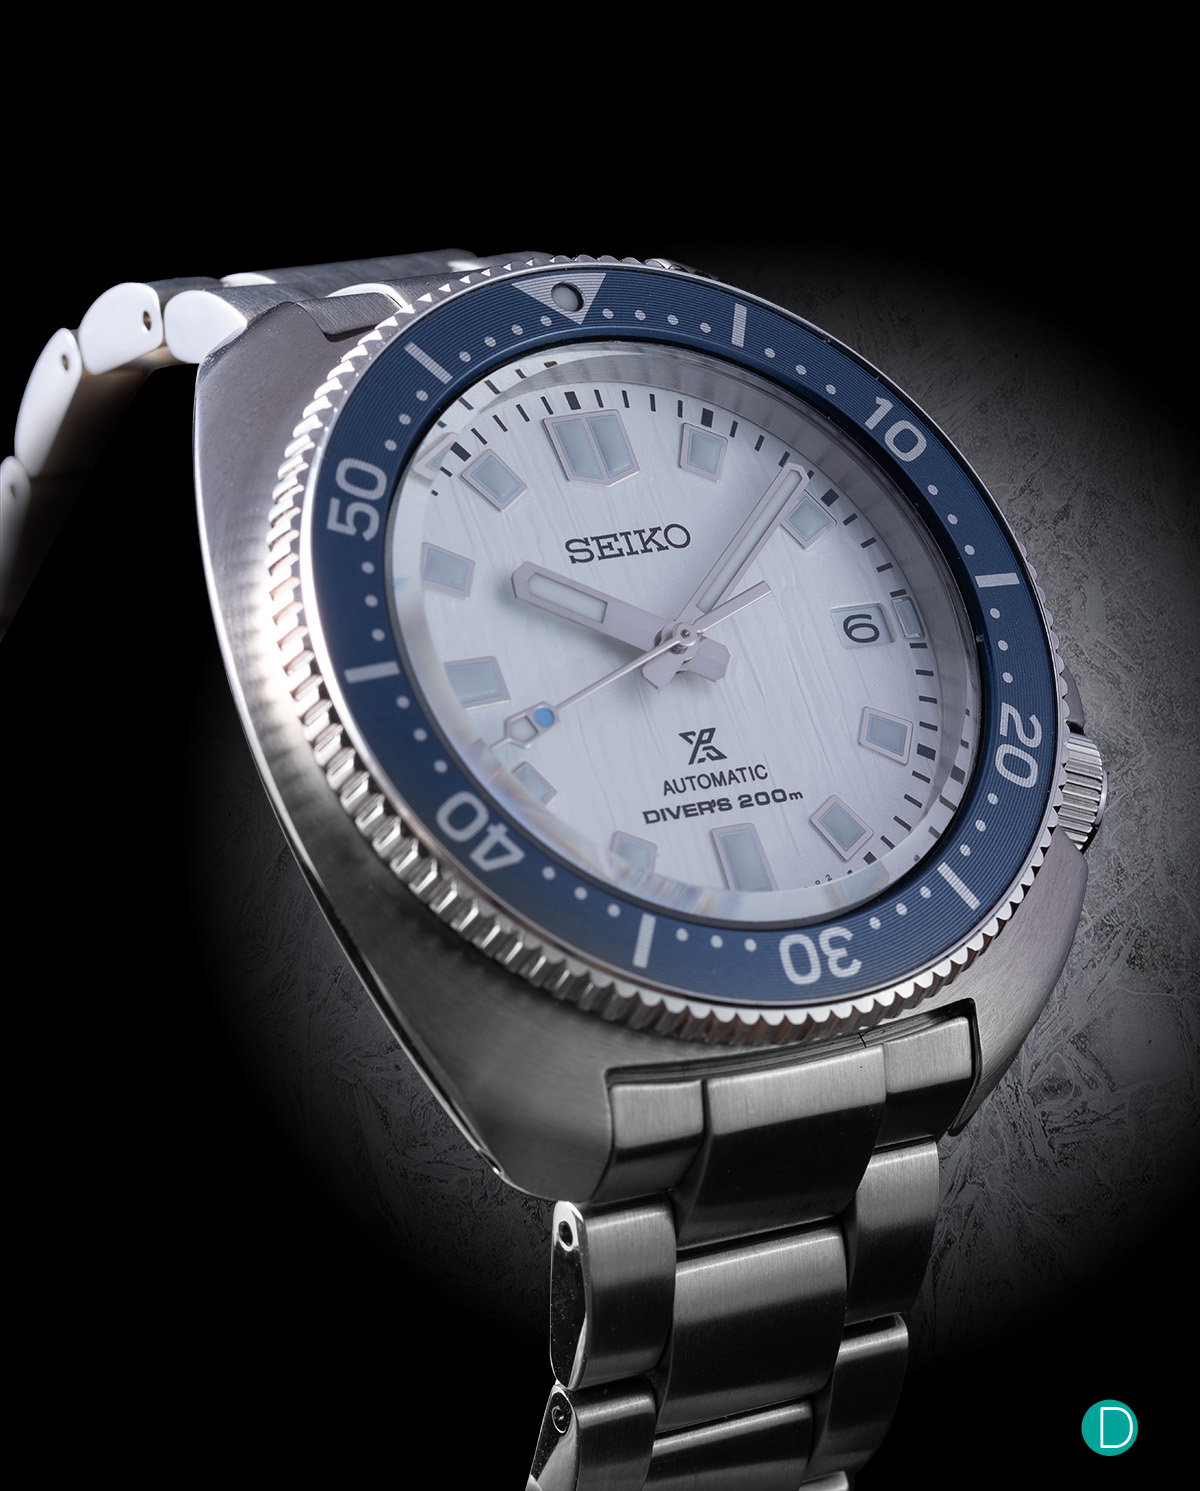 The new Seiko Prospex Diver SPB301 -